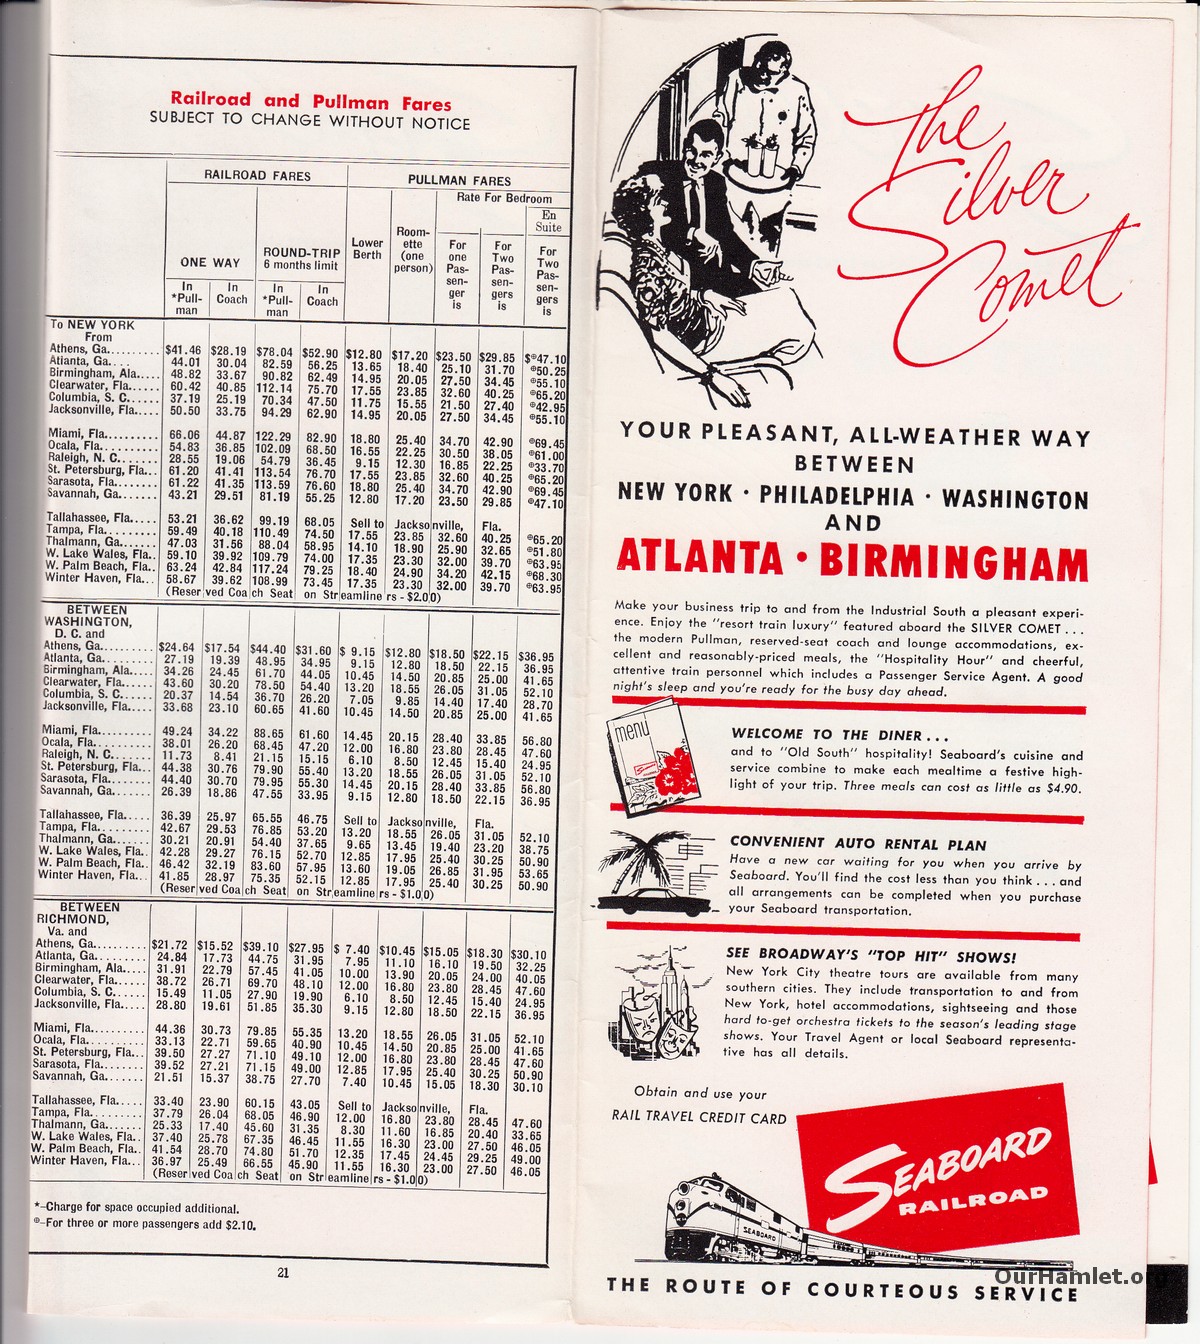 Seaboard Schedule Dec 1962_0012OH.jpg